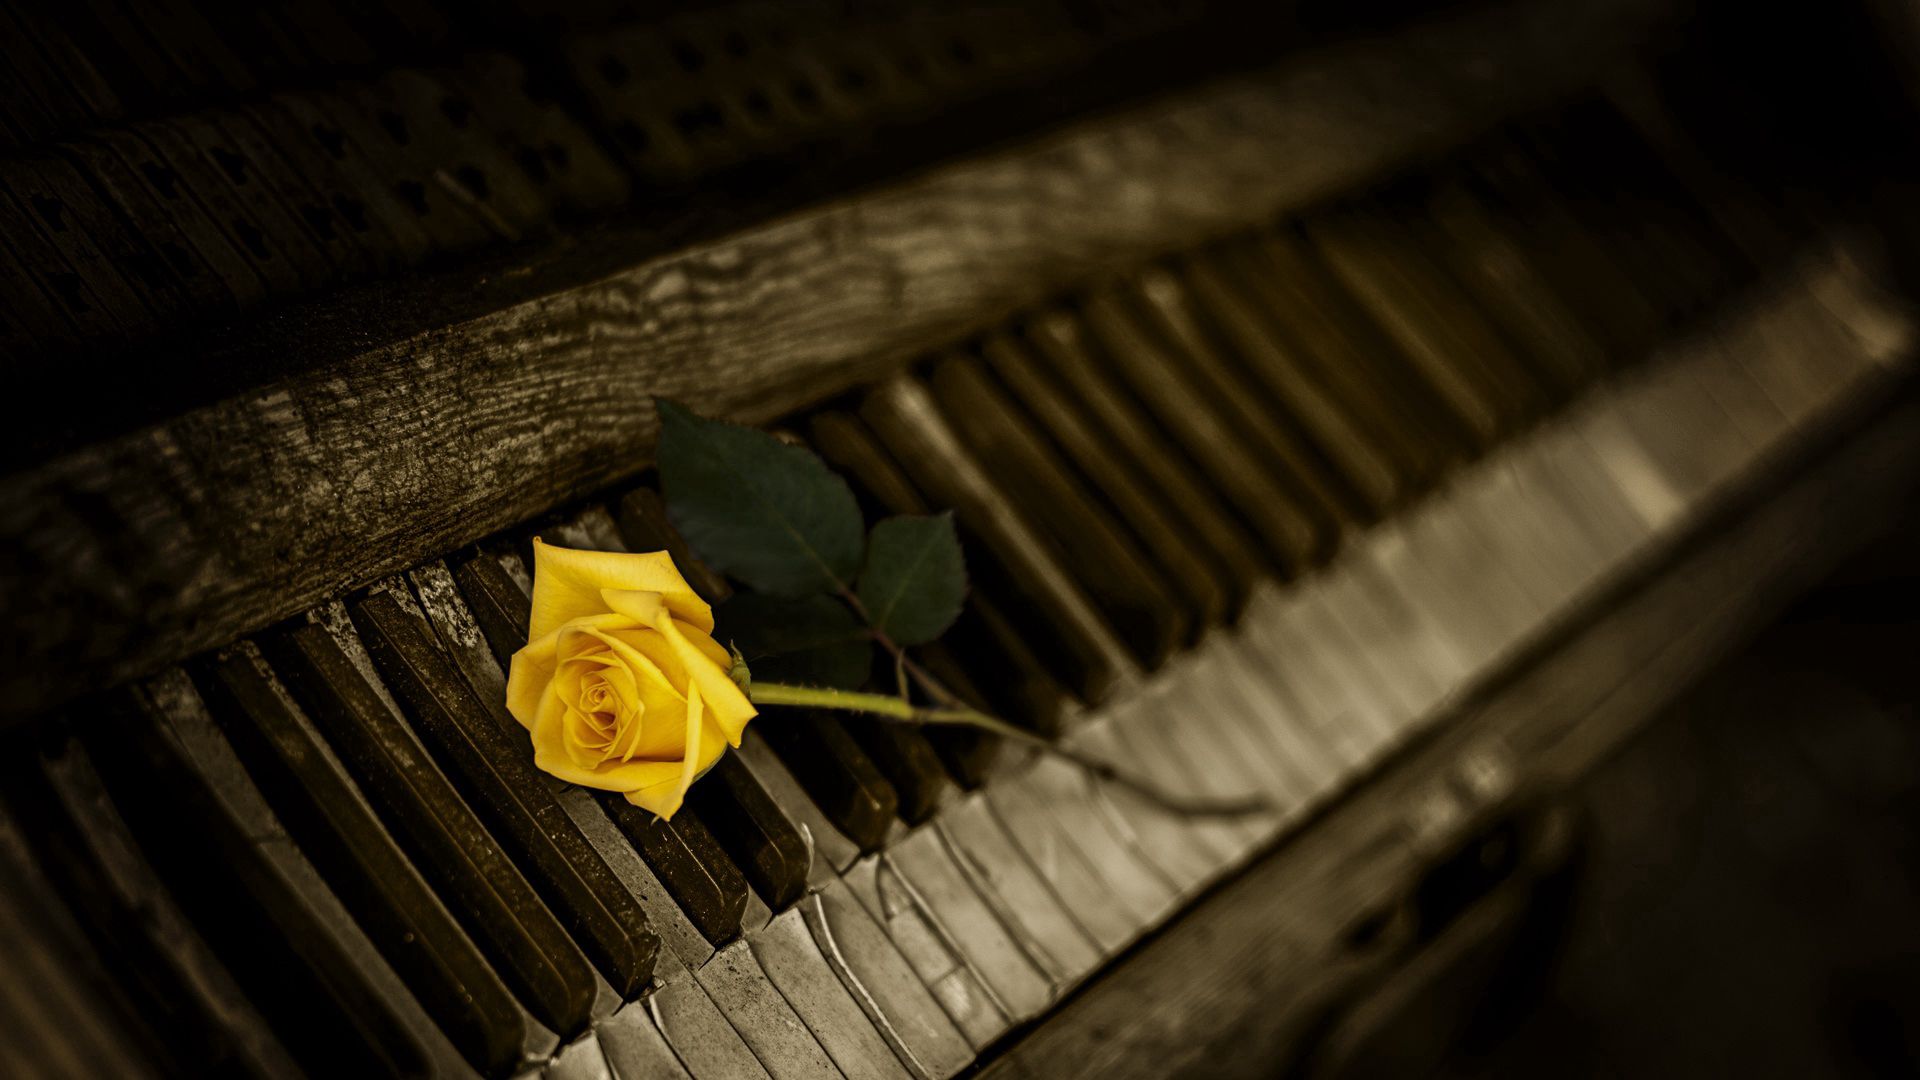 piano, flowers, rose flower, rose, keys